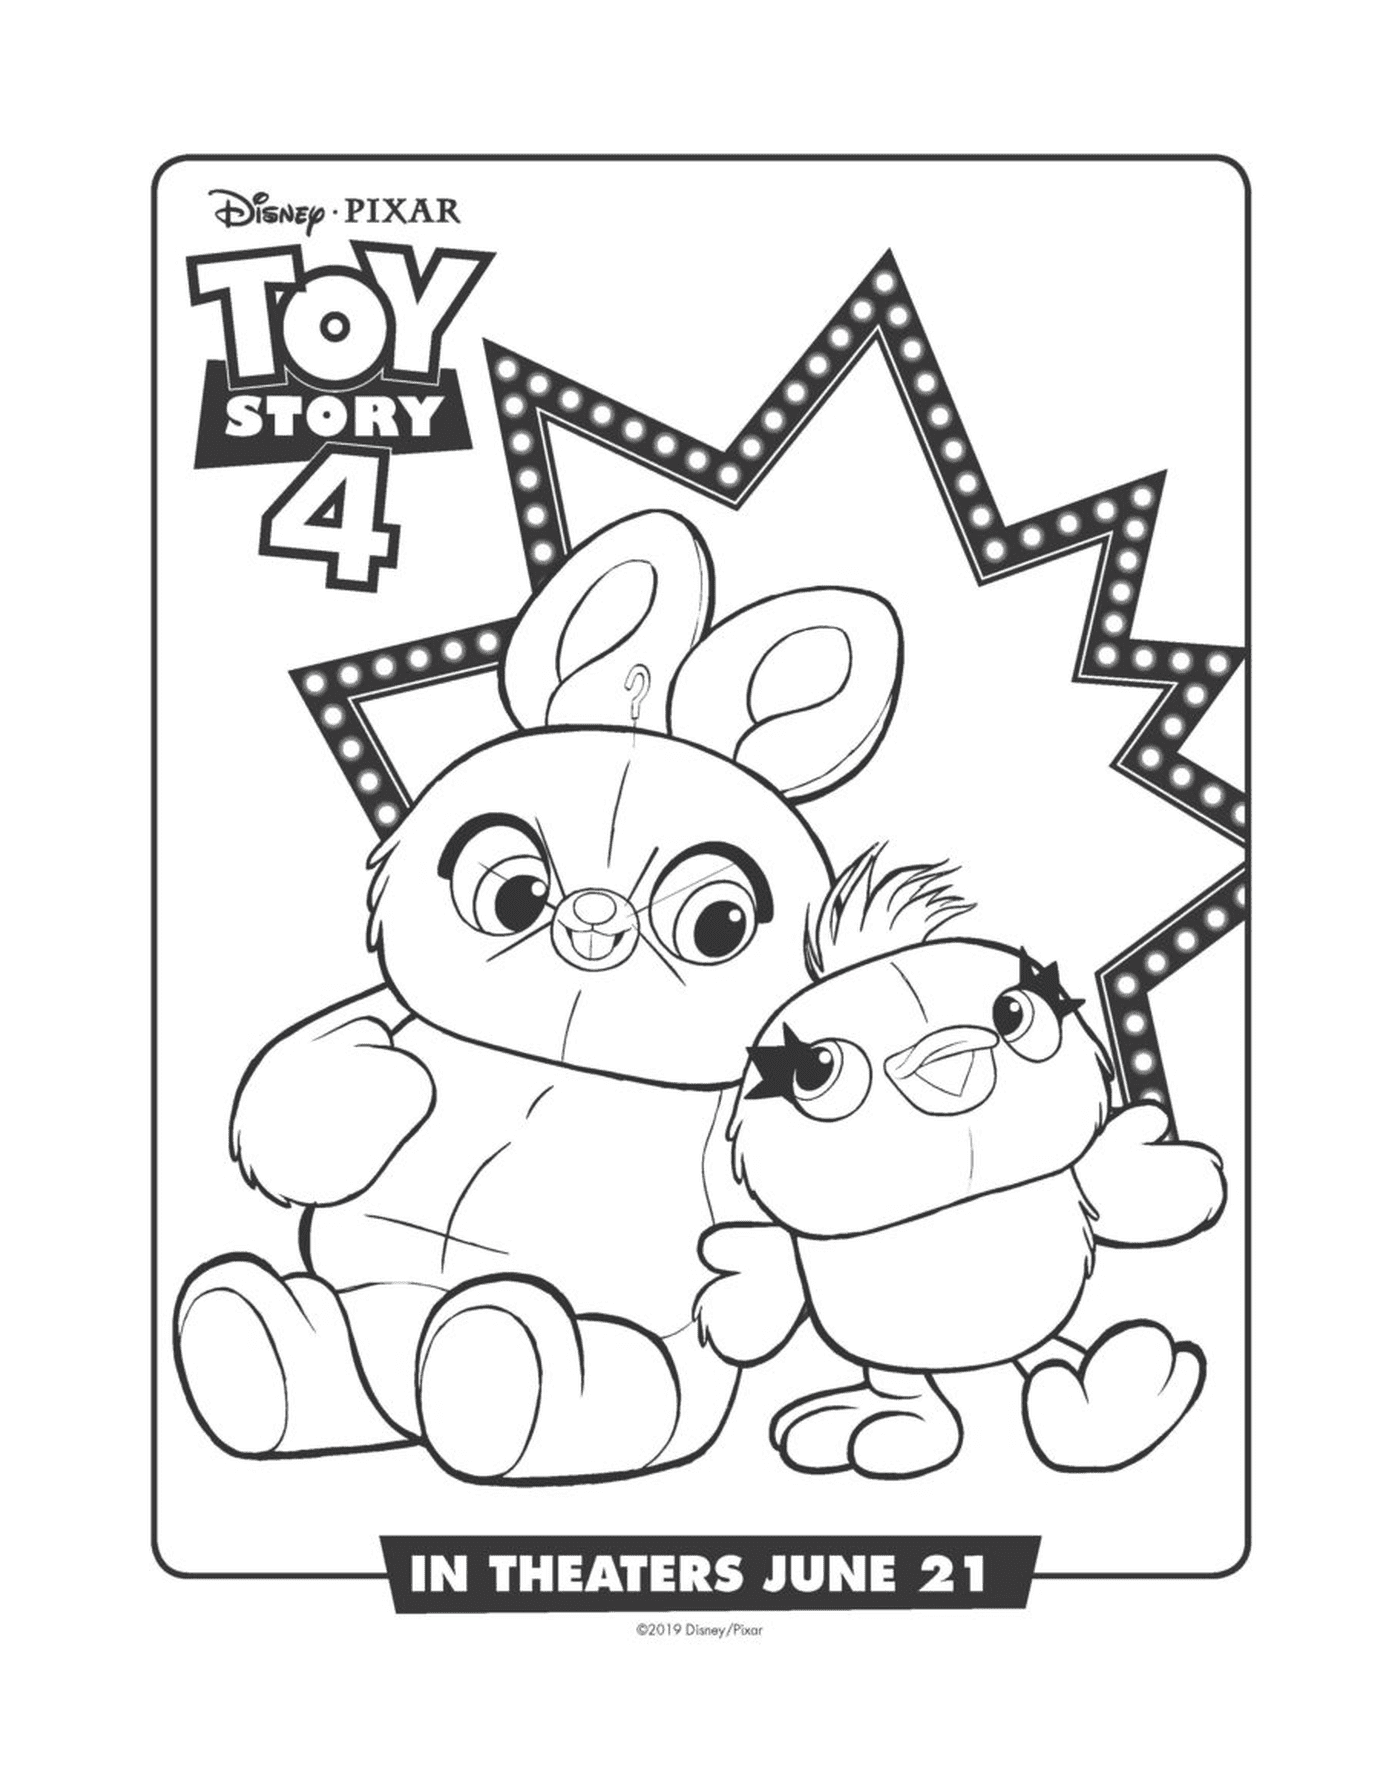  Bunny y Ducky de Toy Story 4, cómplices 